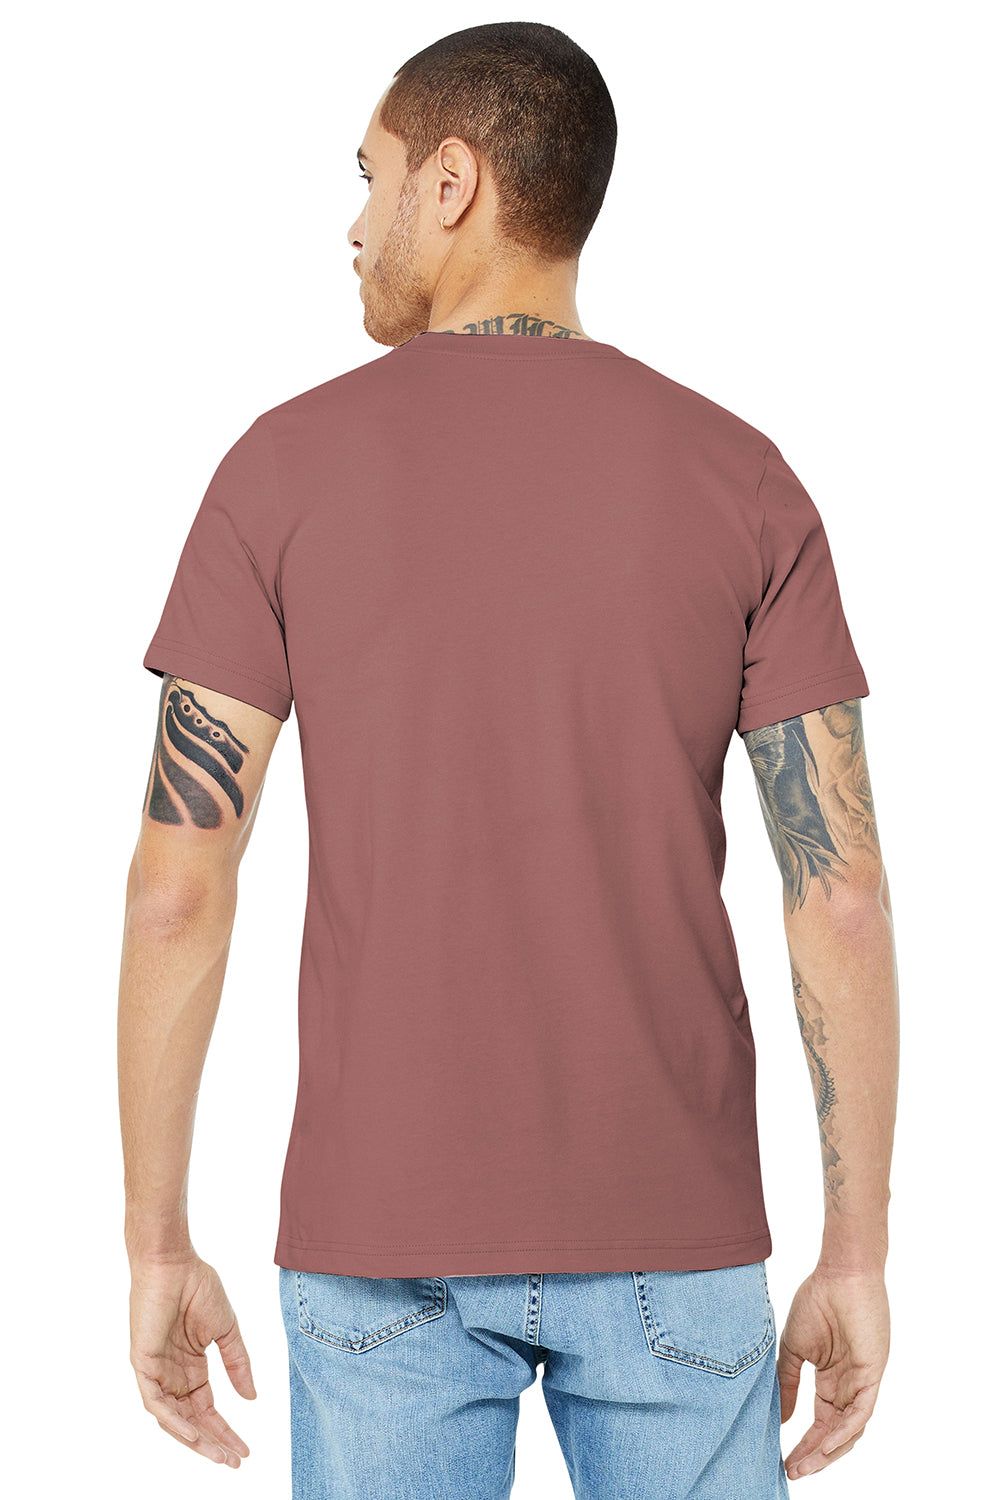 Bella + Canvas BC3001/3001C Mens Jersey Short Sleeve Crewneck T-Shirt Mauve Model Back